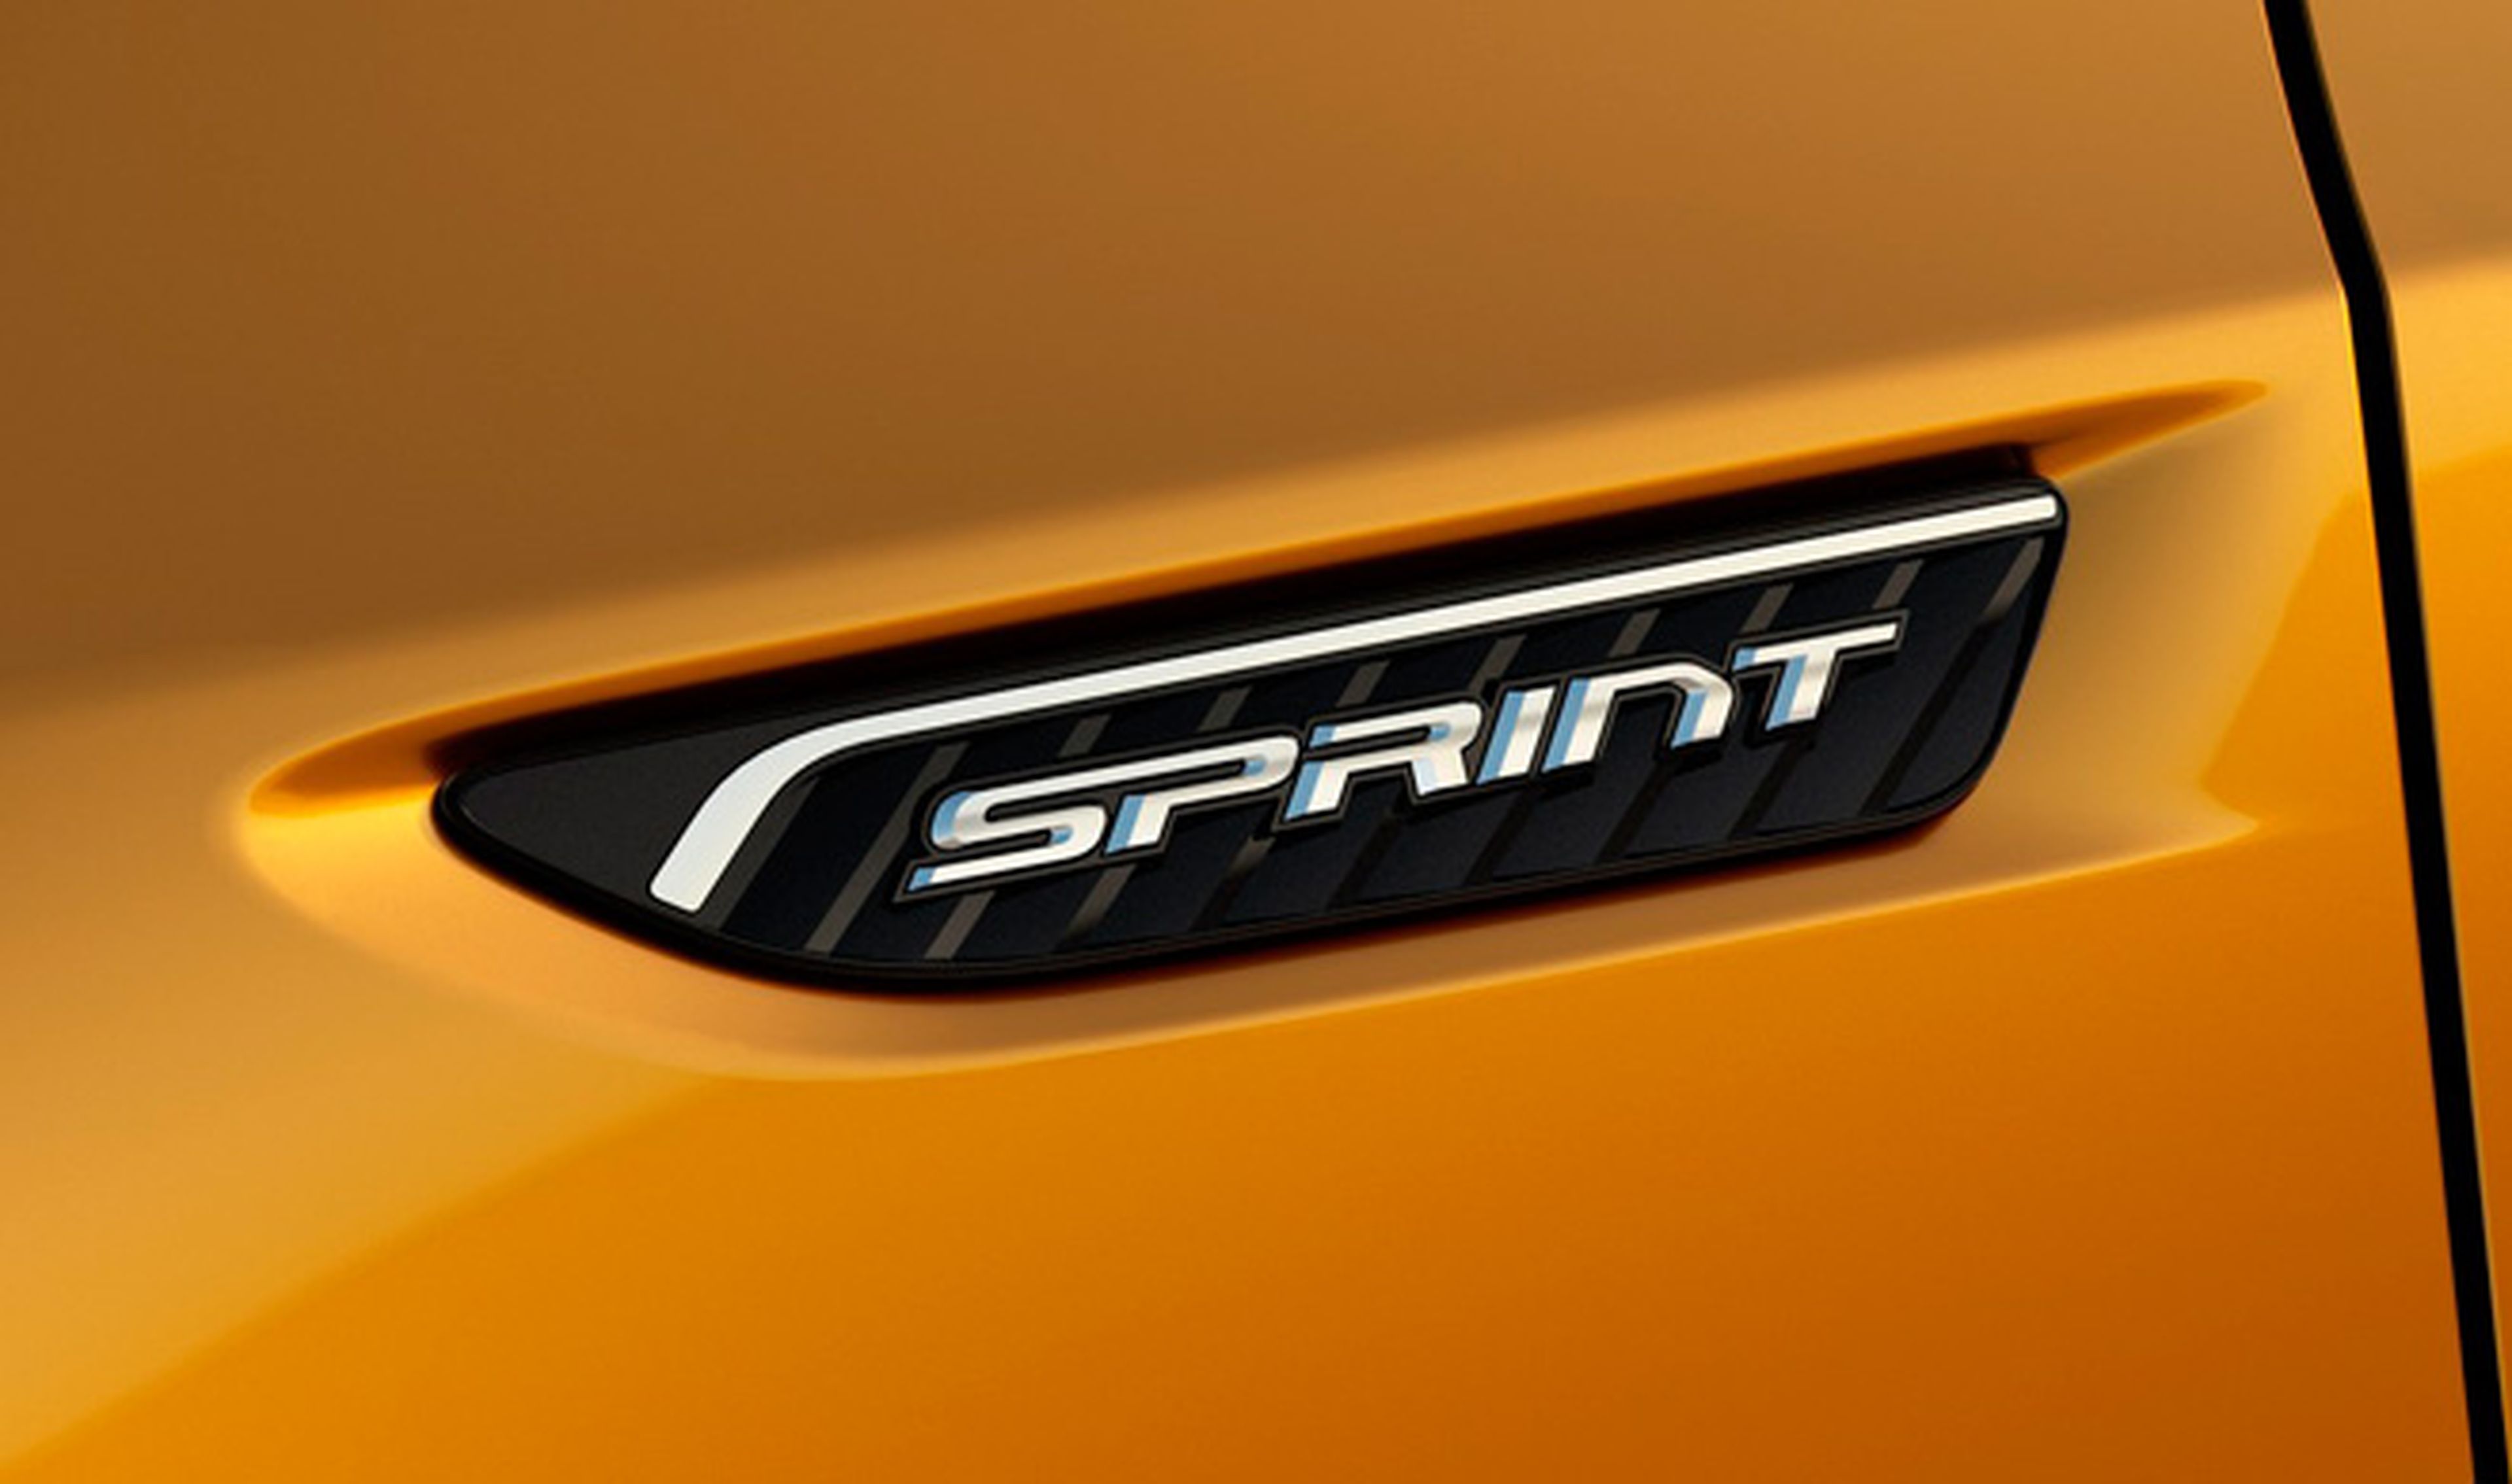 El potente Ford Falcon XR Sprint llegará en 2016